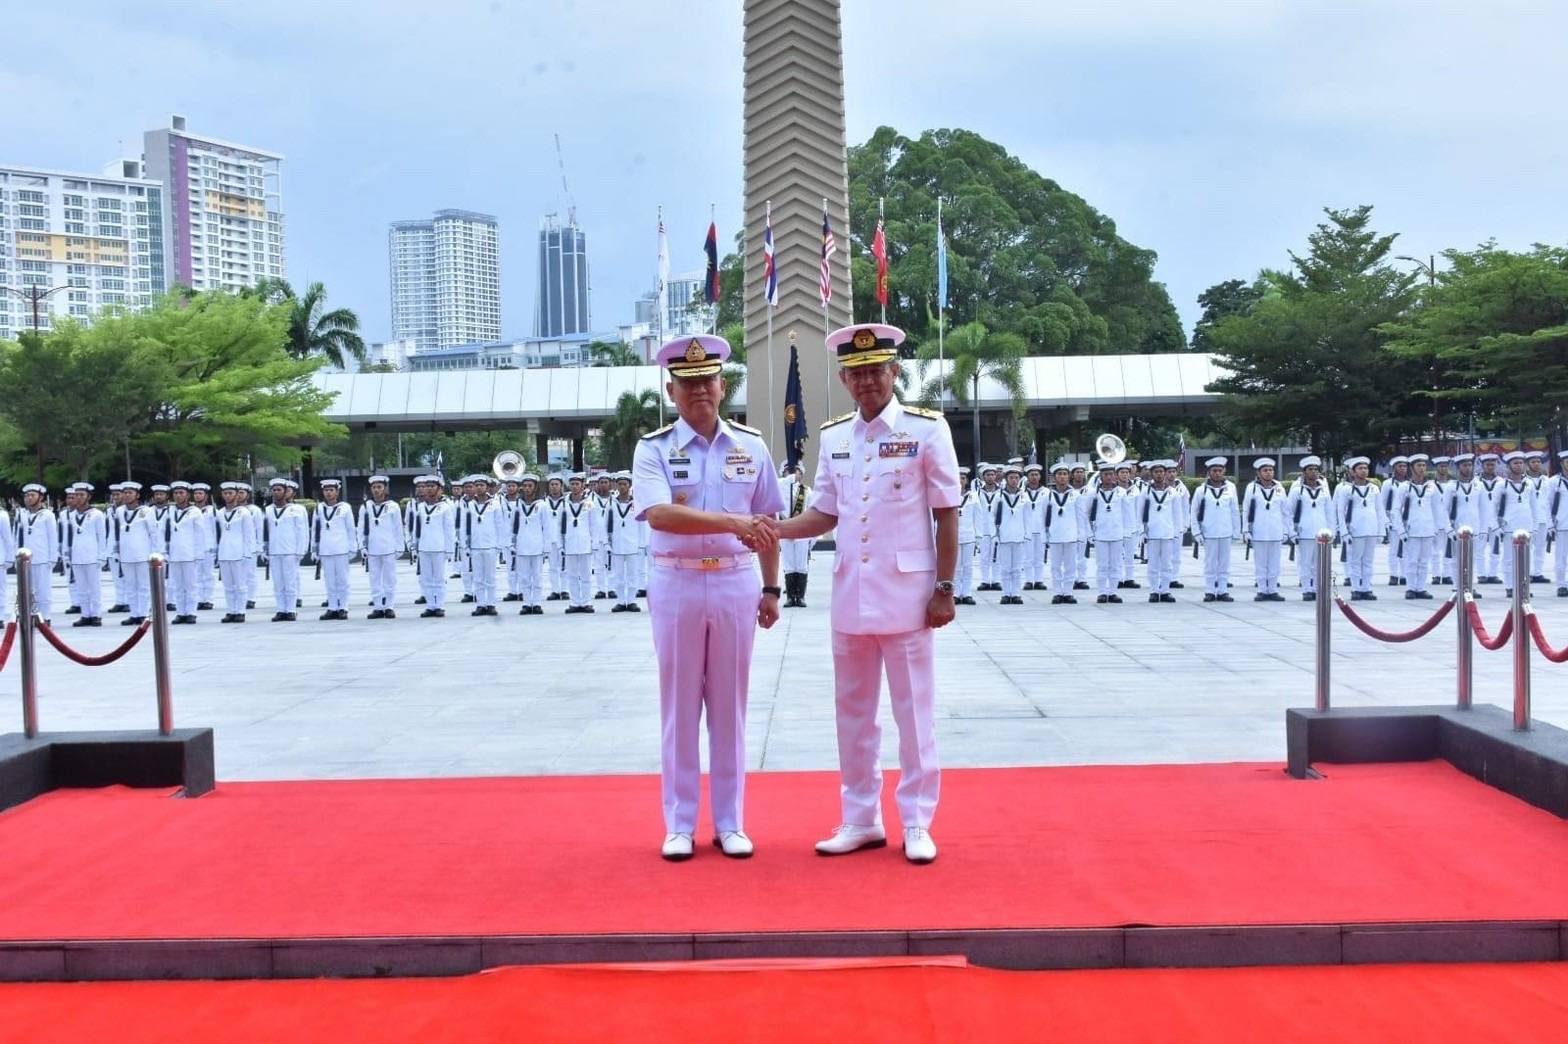 ผู้บัญชาการทหารเรือ เยือนประเทศมาเลเซียอย่างเป็นทางการ ในฐานะแขกของ กองทัพเรือมาเลเซีย กระชับความสัมพันธ์กองทัพสองประเทศ